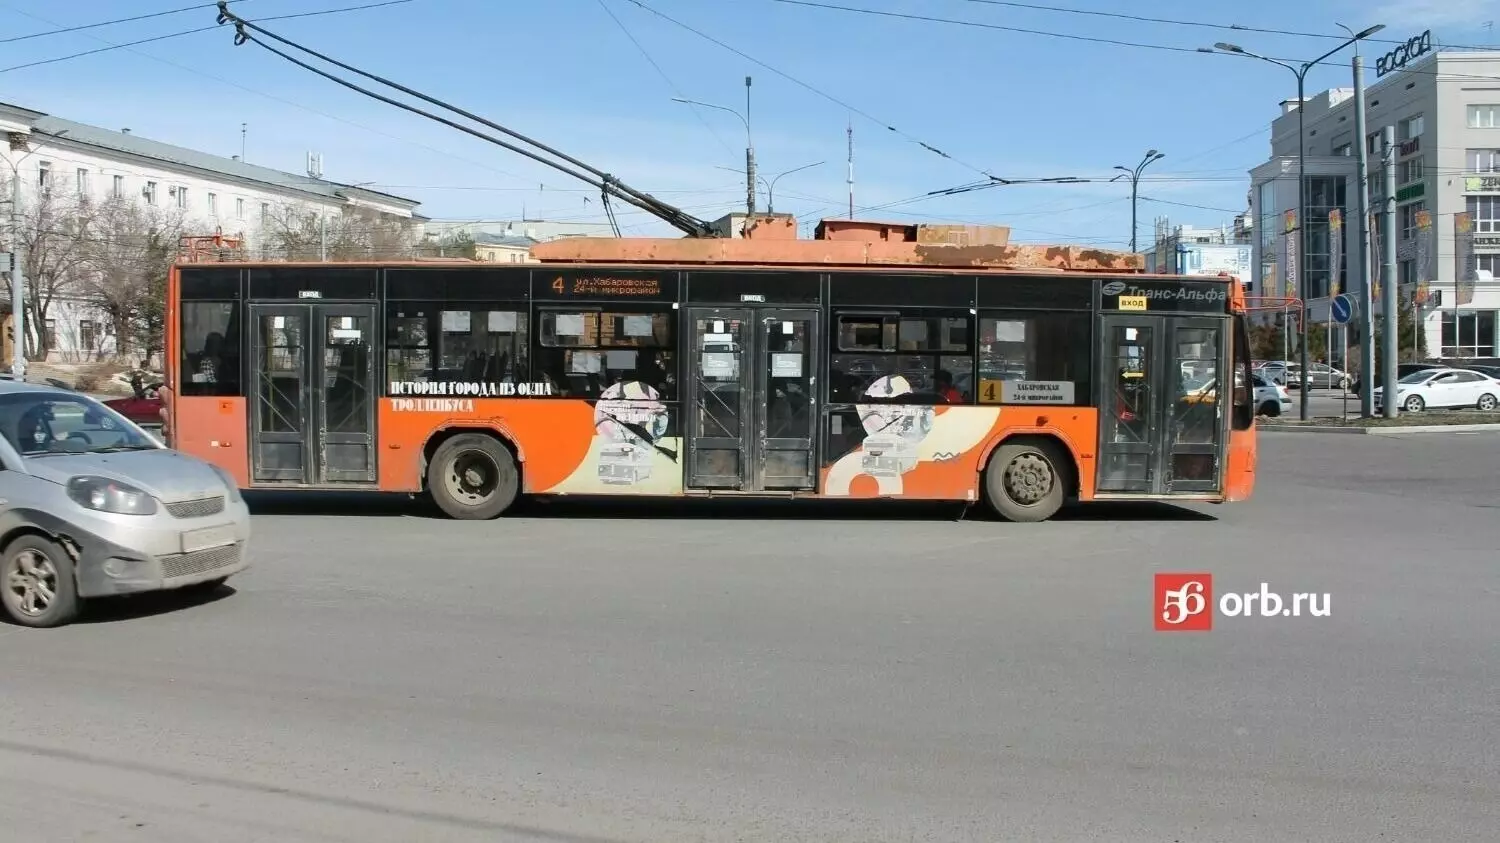 Новых троллейбусов в Оренбурге не будет